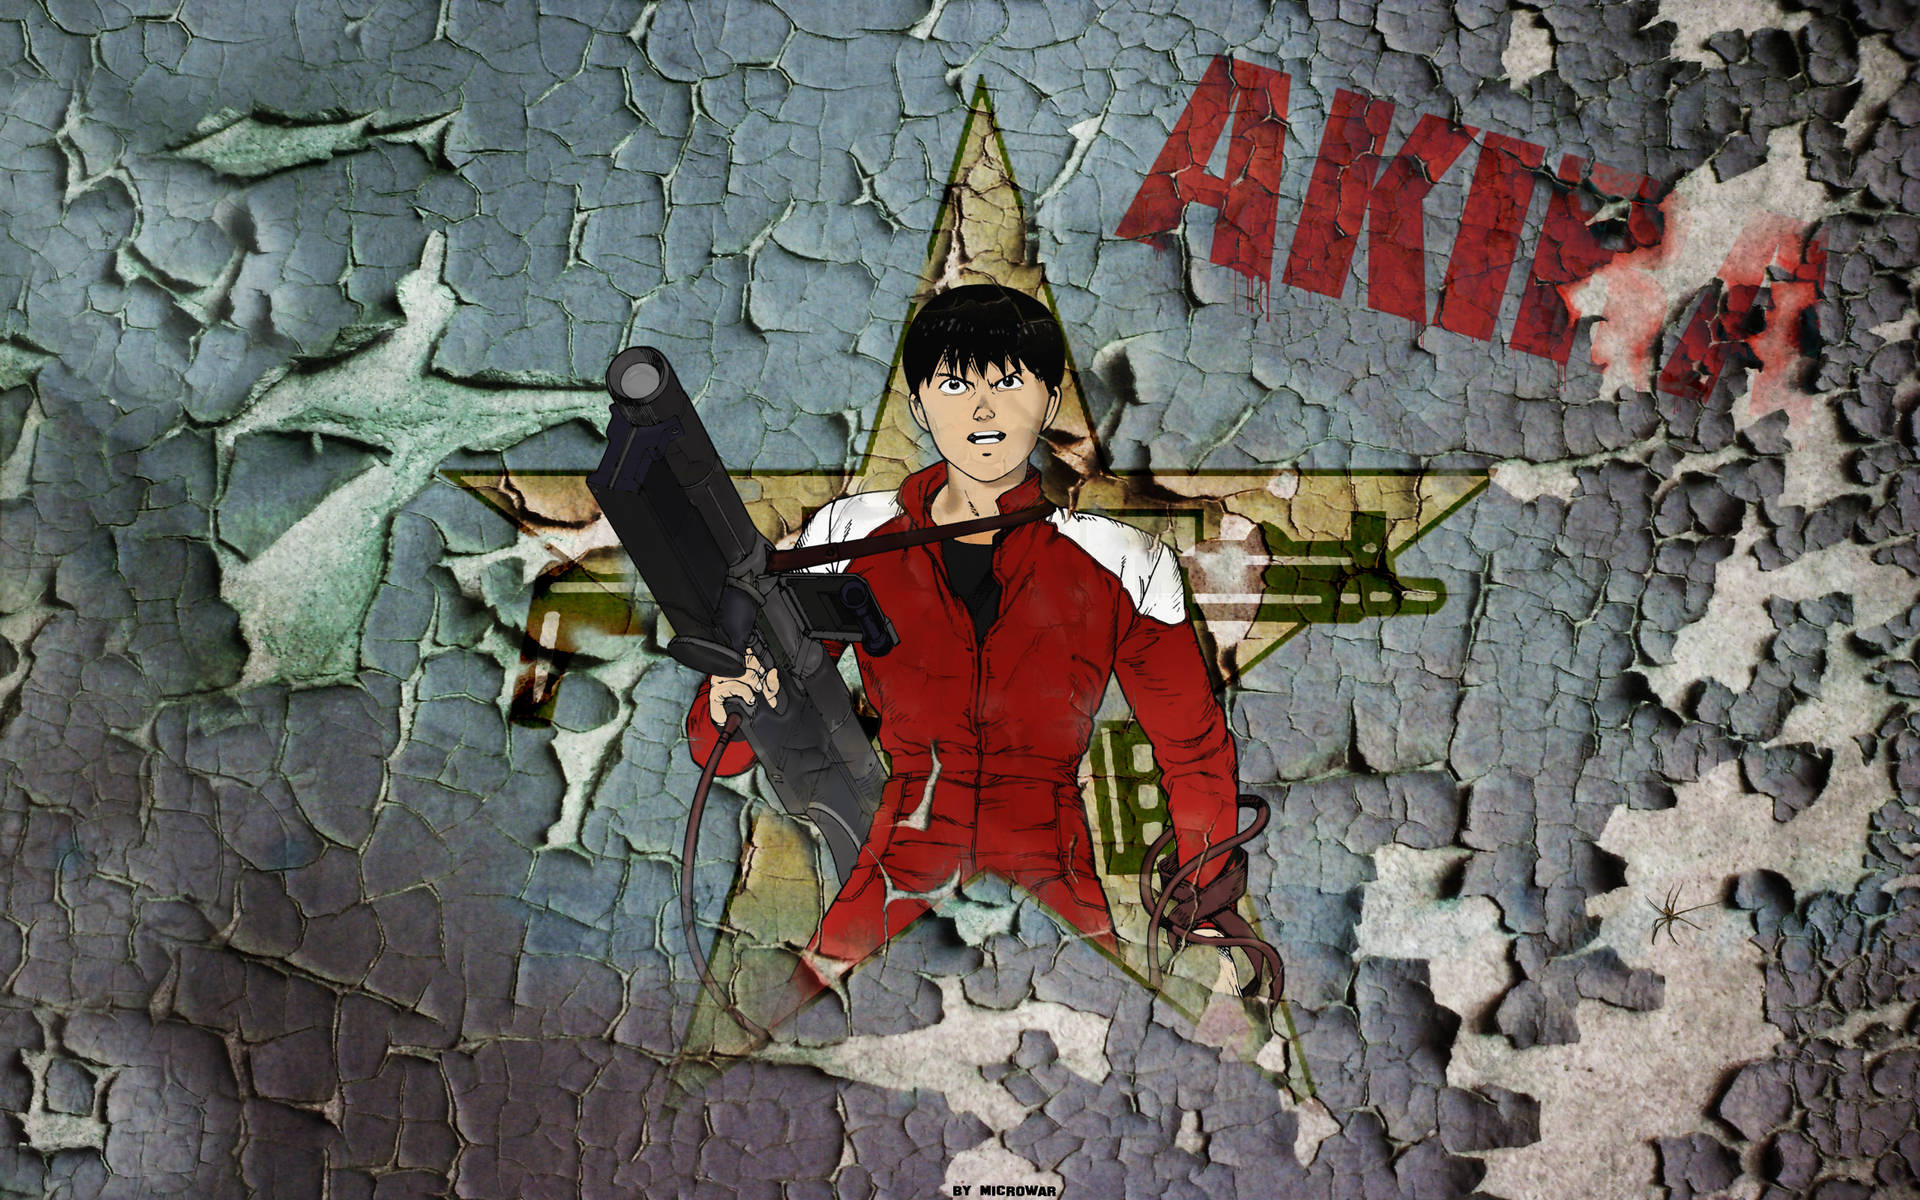 Akira 2560X1600 Wallpaper and Background Image